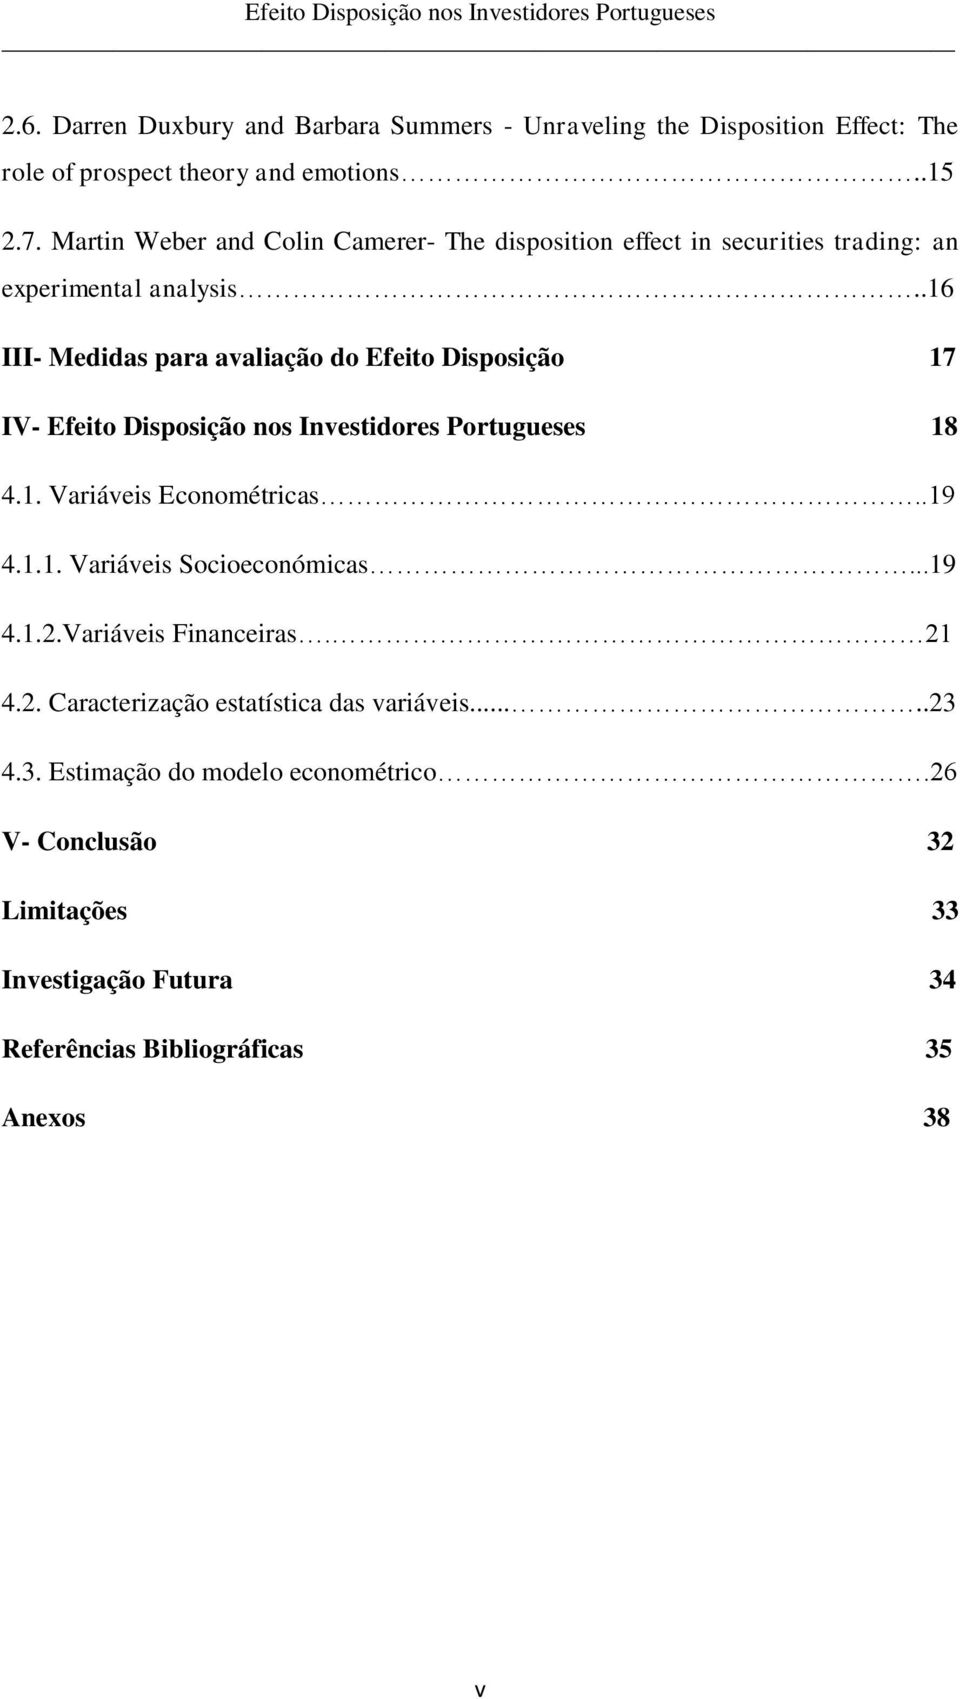 .16 III- Medidas para avaliação do Efeito Disposição 17 IV- Efeito Disposição nos Investidores Portugueses 18 4.1. Variáveis Econométricas..19 4.1.1. Variáveis Socioeconómicas.